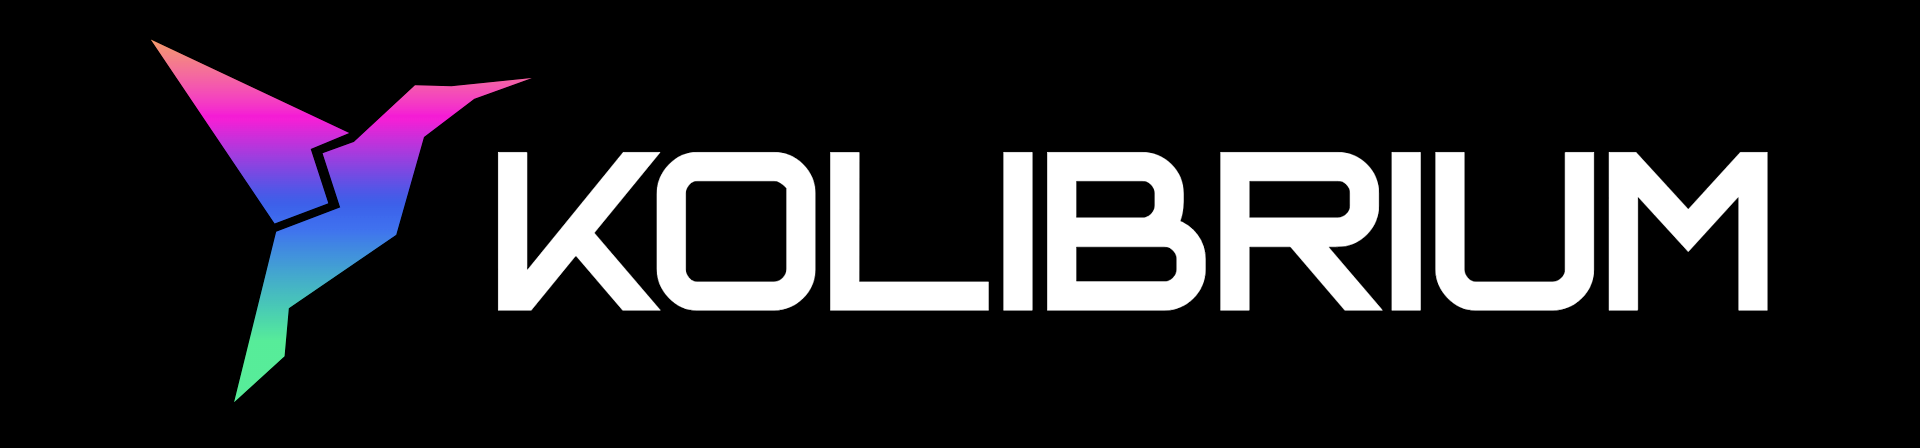 kolibrium_logo.png